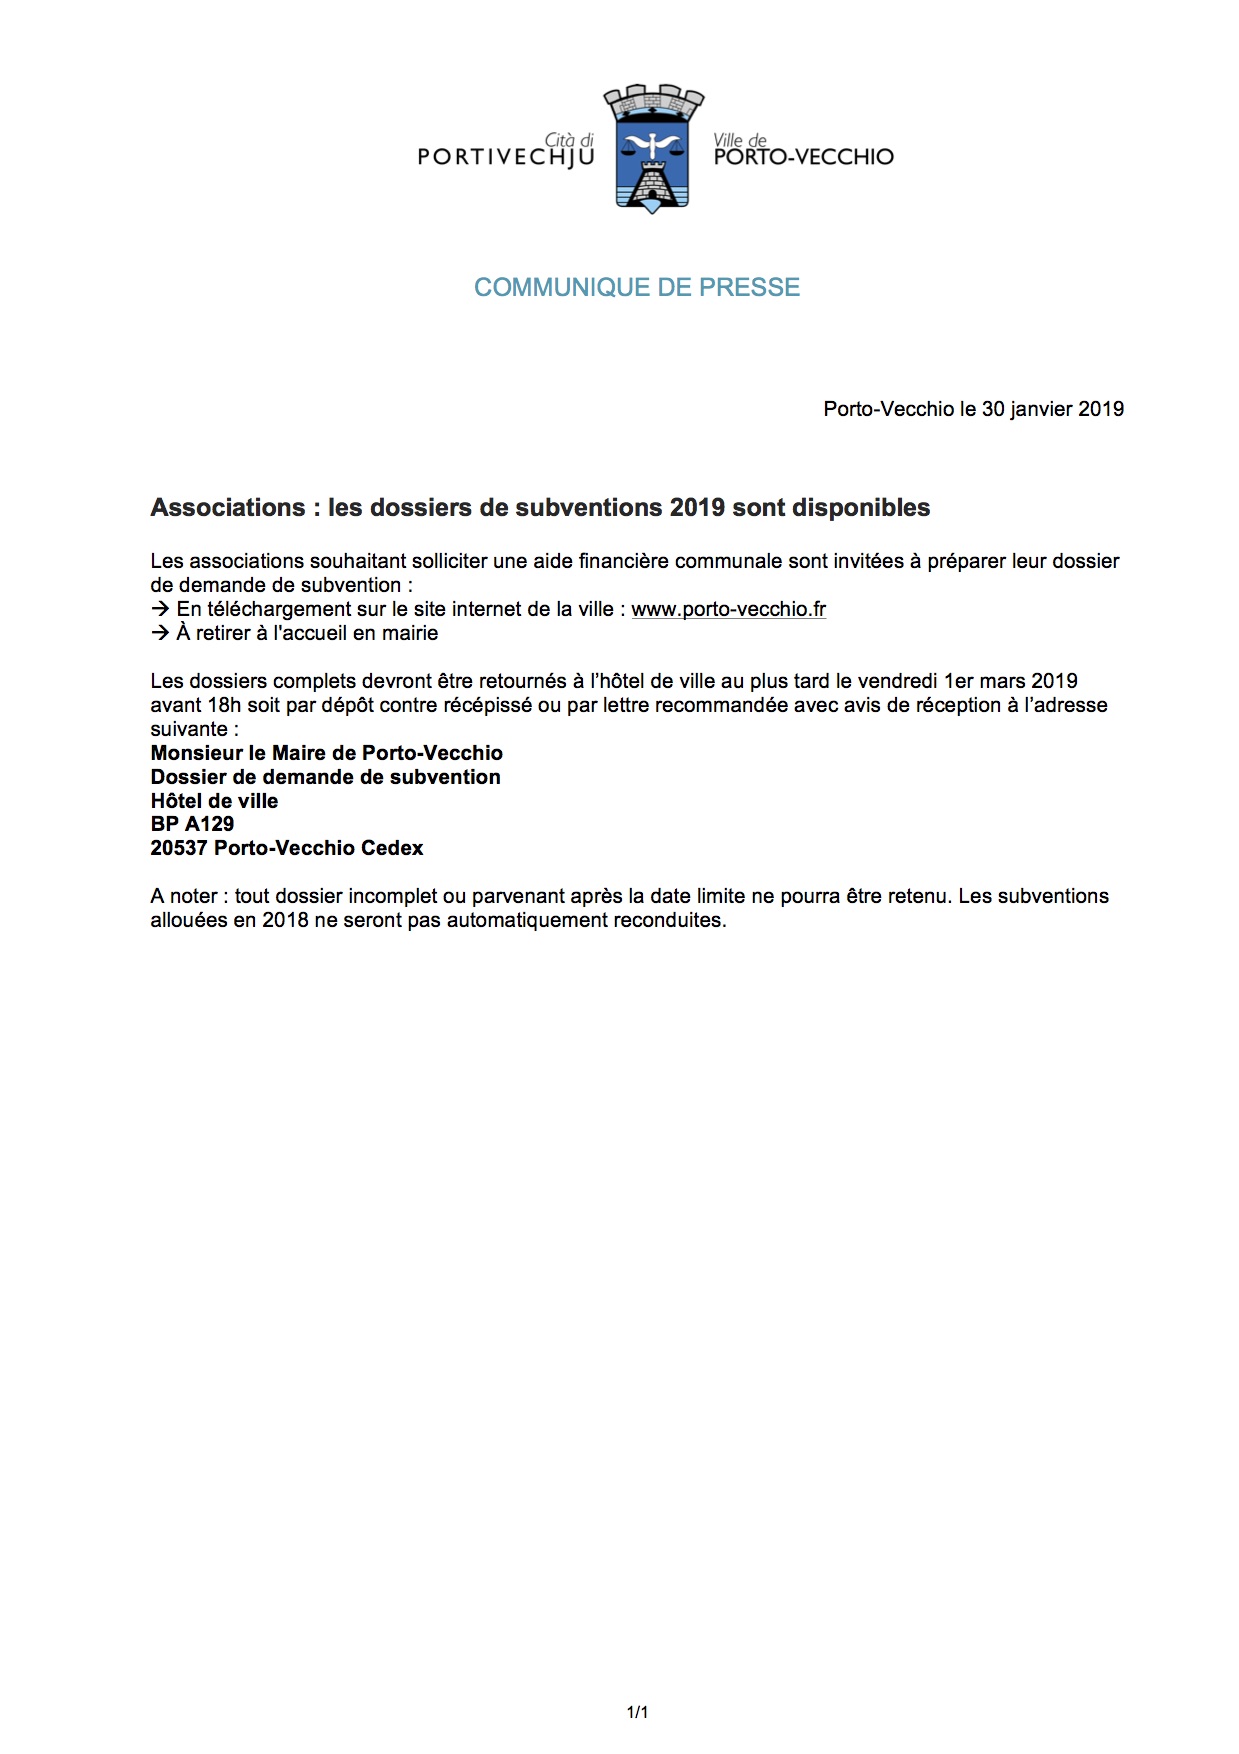 Porto Vecchio : les dossiers de subventions 2019 pour les associations sont disponibles